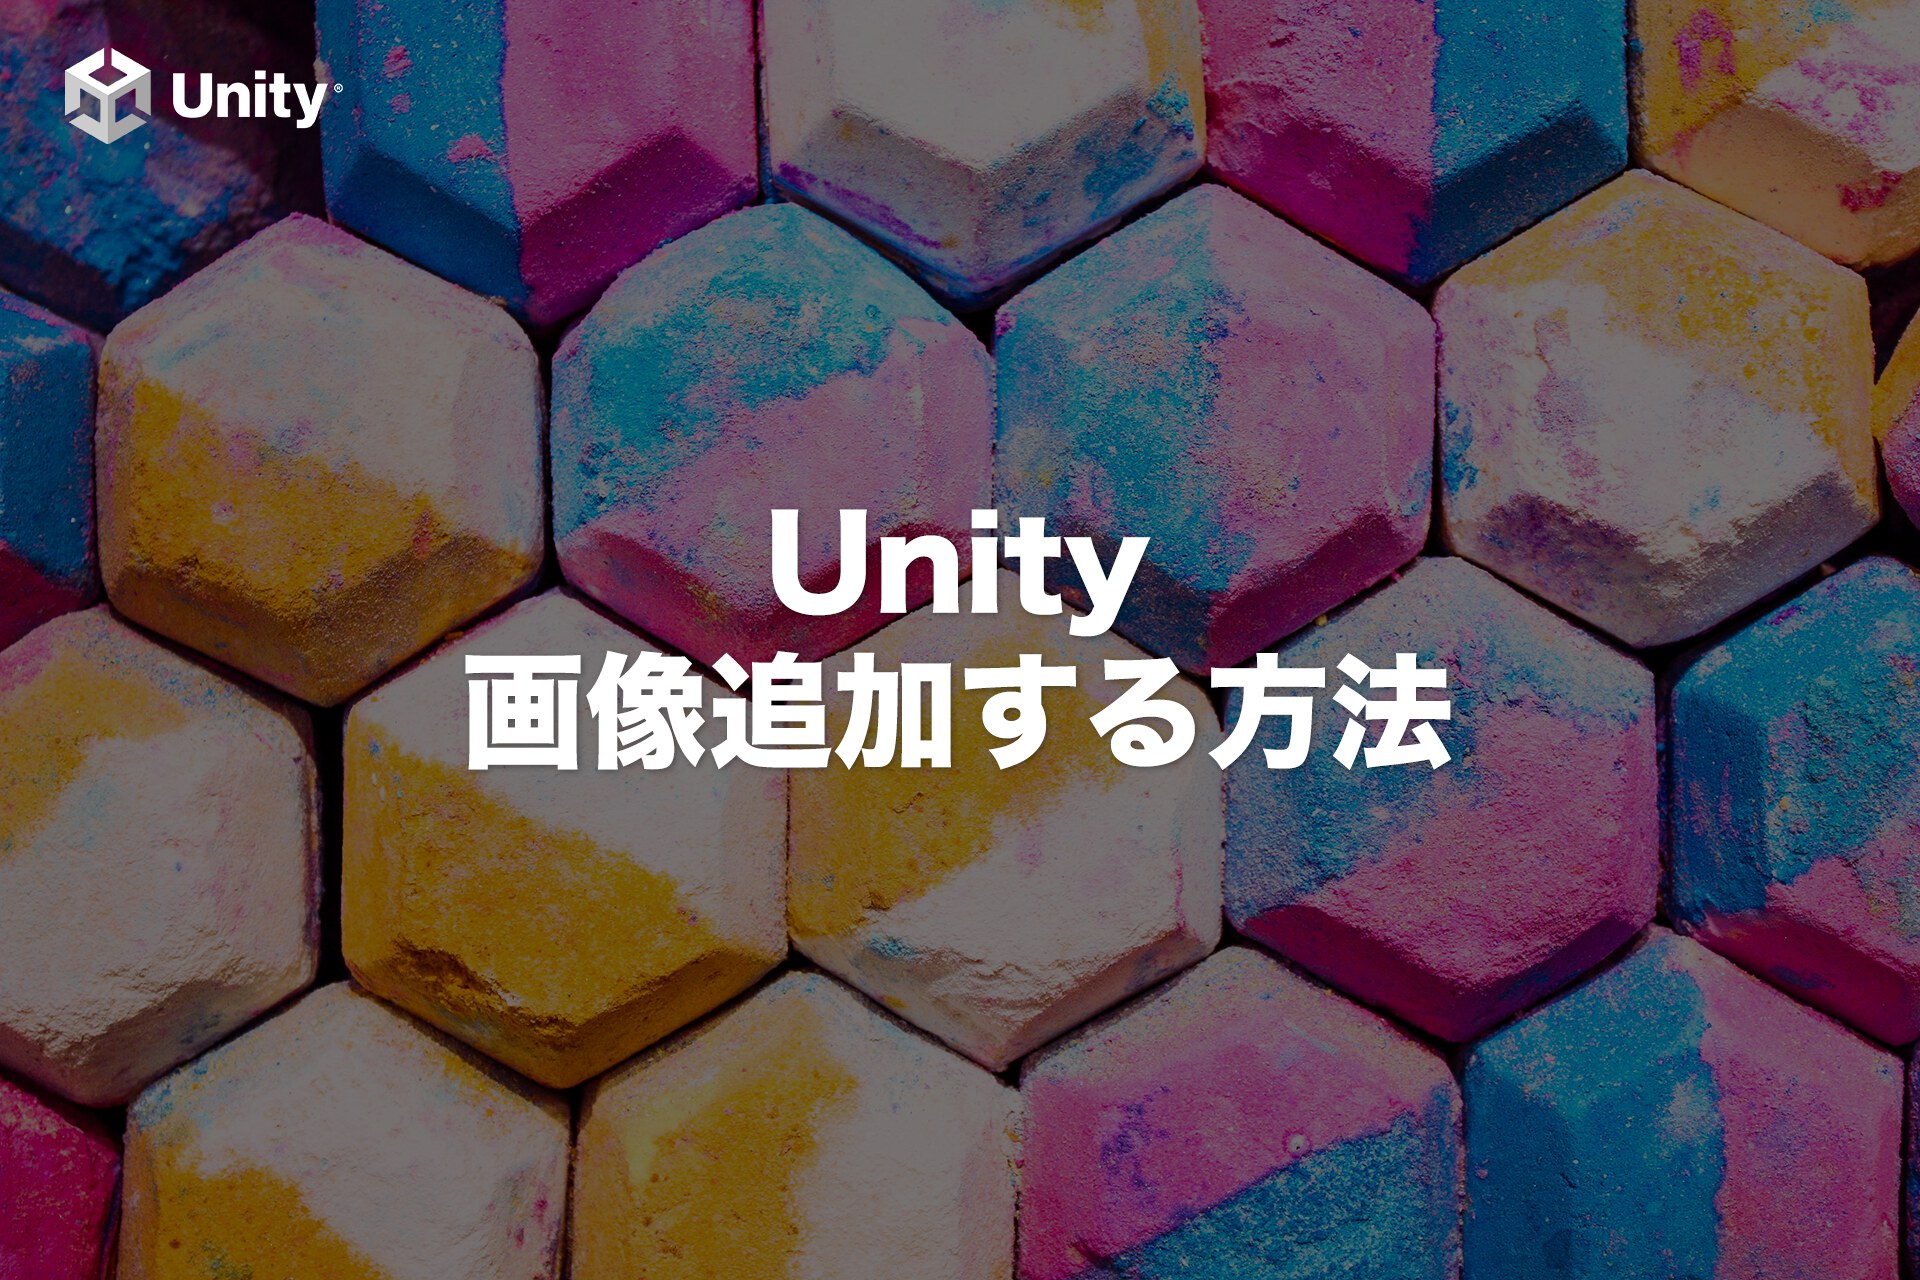 Unityに画像追加する6つのステップ